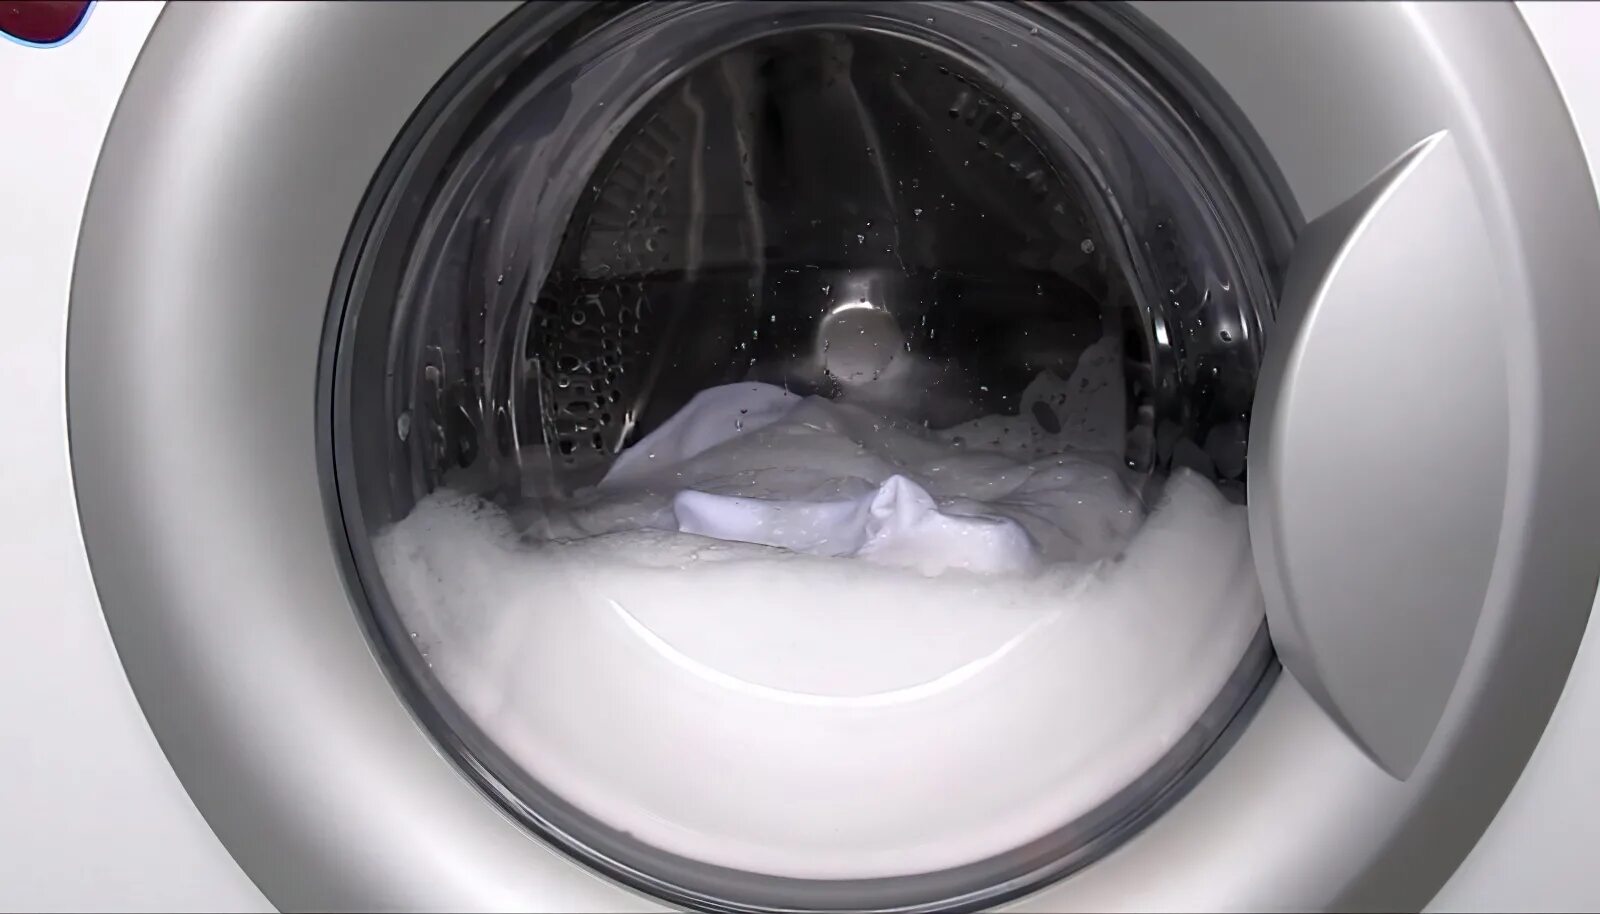 Вода в стиральной машинке после стирки. Стиральная машина LG стирает белье LG. Стиральная машина внутри. Пенообразование в стиральной машине. С пеной стиральная машинка.